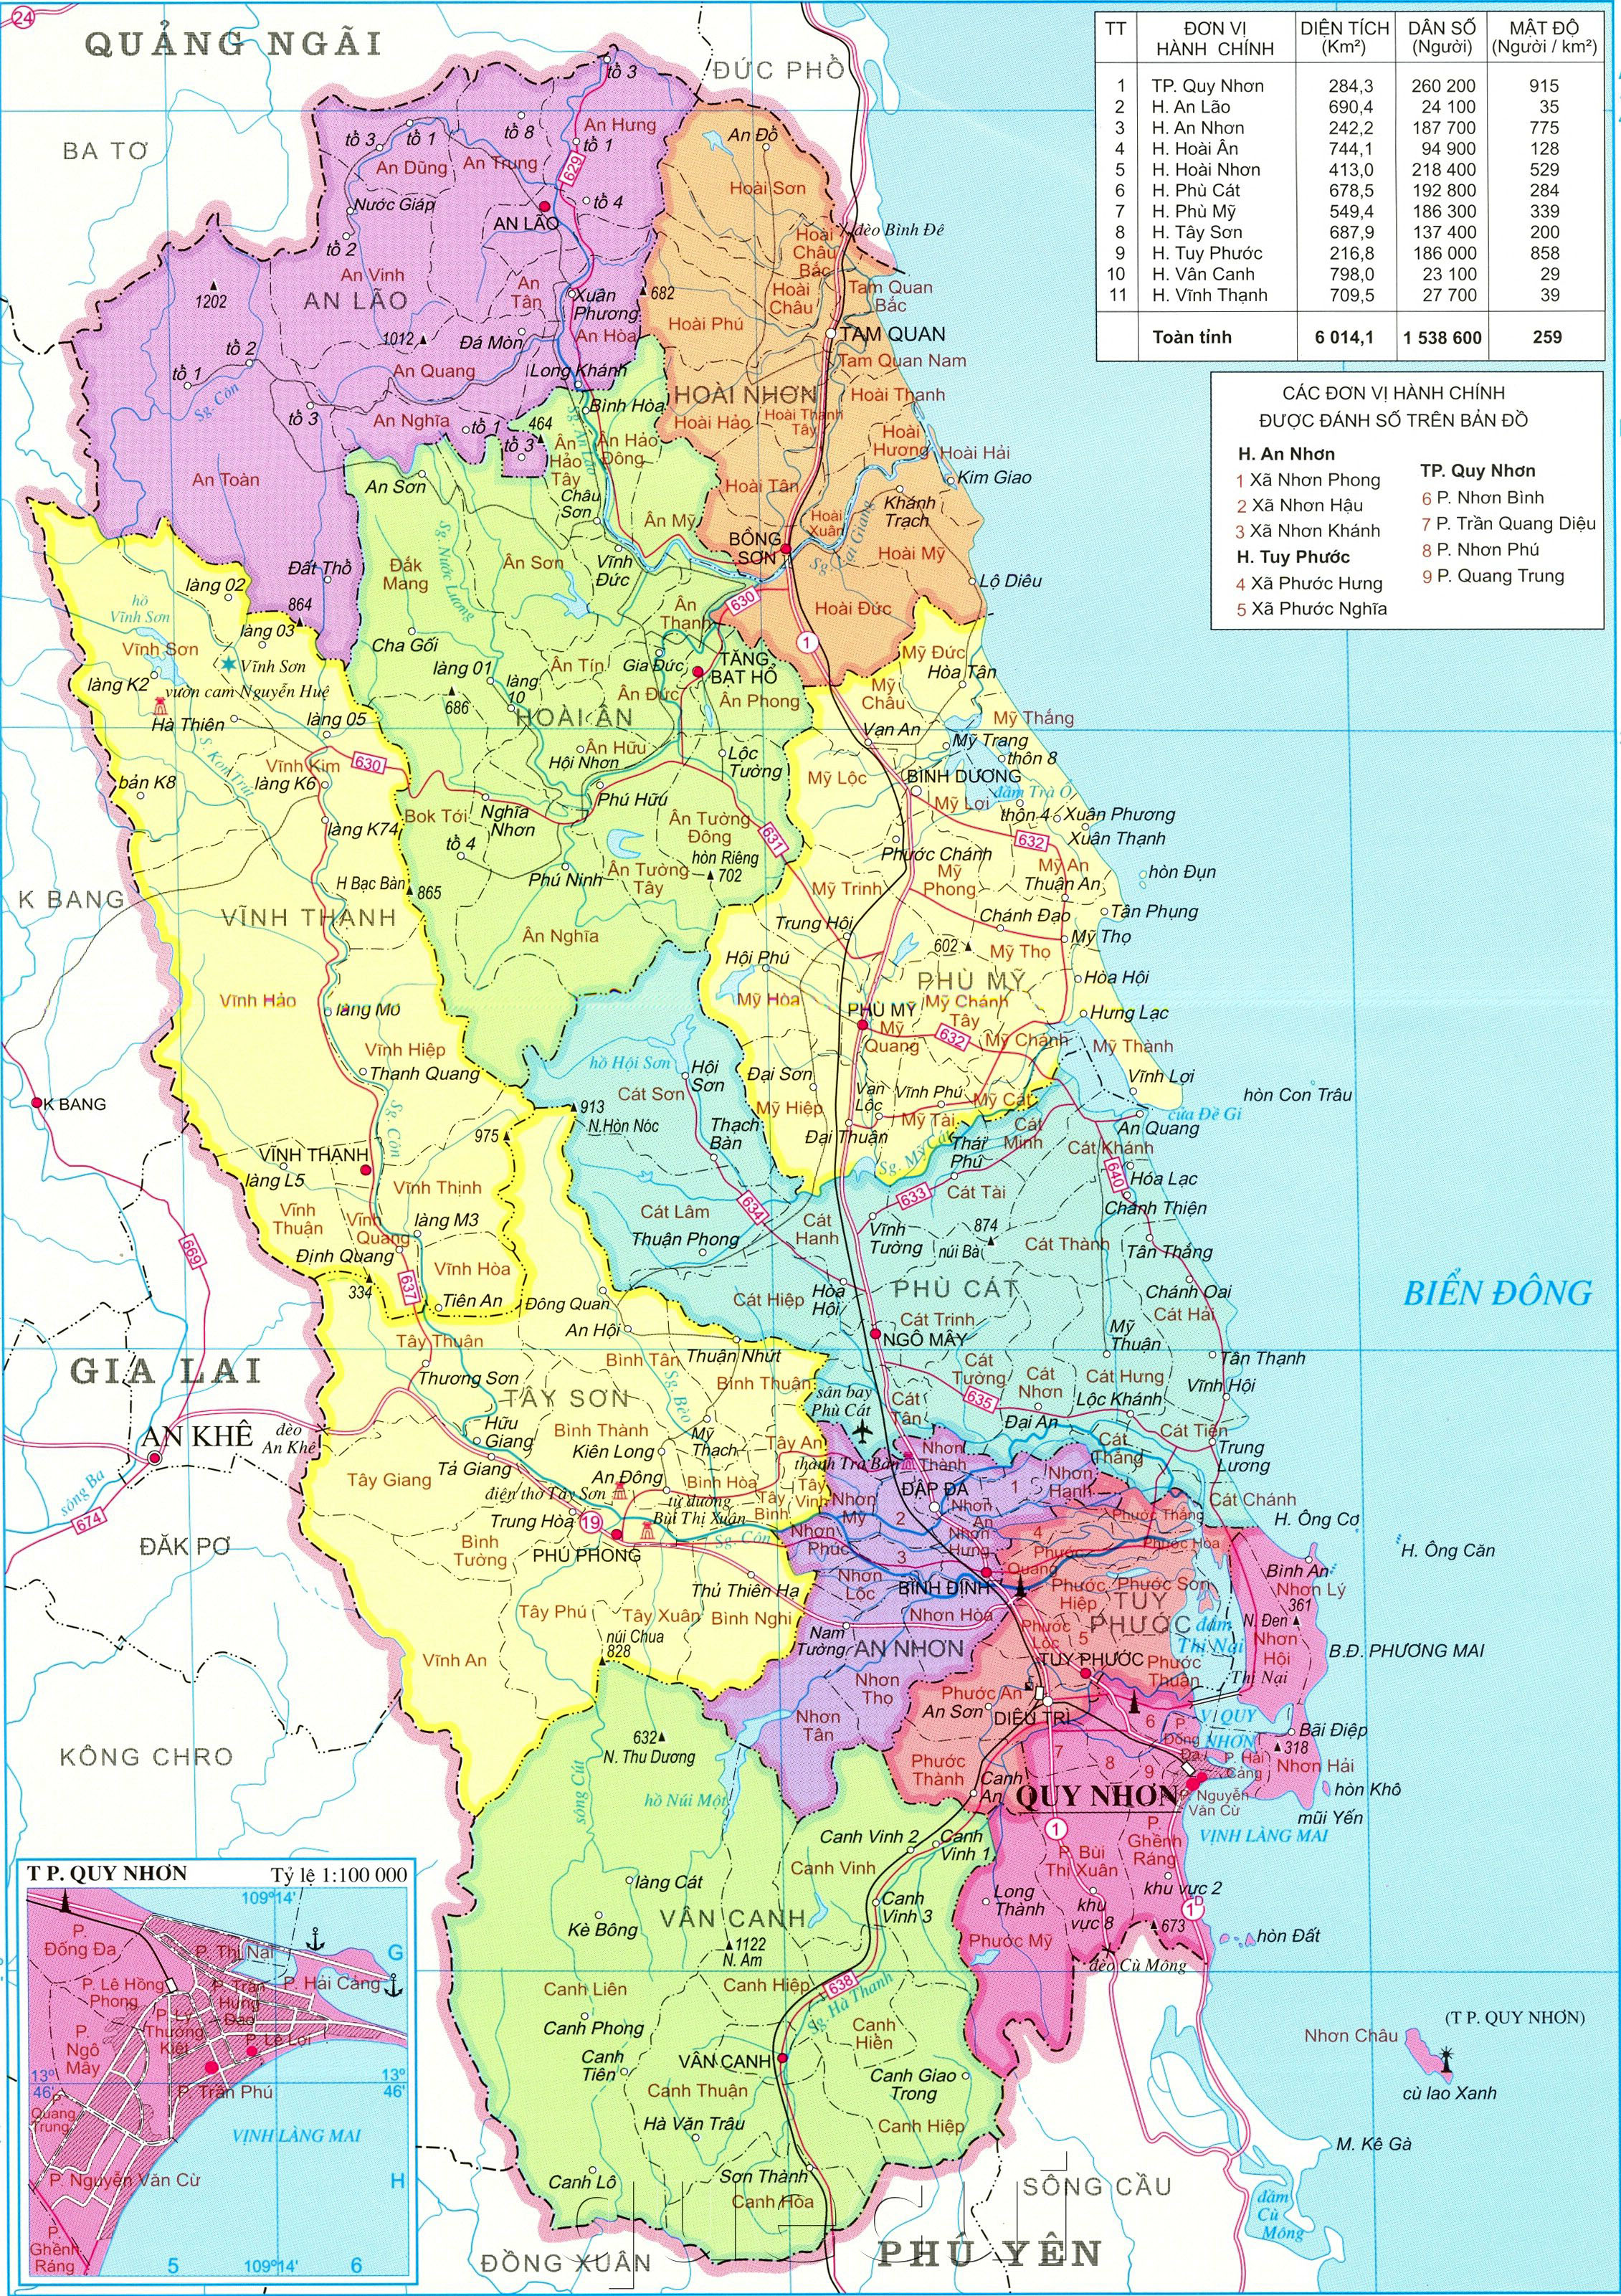 Hãy cùng khám phá bản đồ hành chính tỉnh Bình Định năm 2024 để nắm rõ cách phân chia đất đai, địa danh, con đường mới nhất. Cùng đặt chân đến Bình Định để khám phá sự phát triển đầy tiềm năng của vùng đất này.